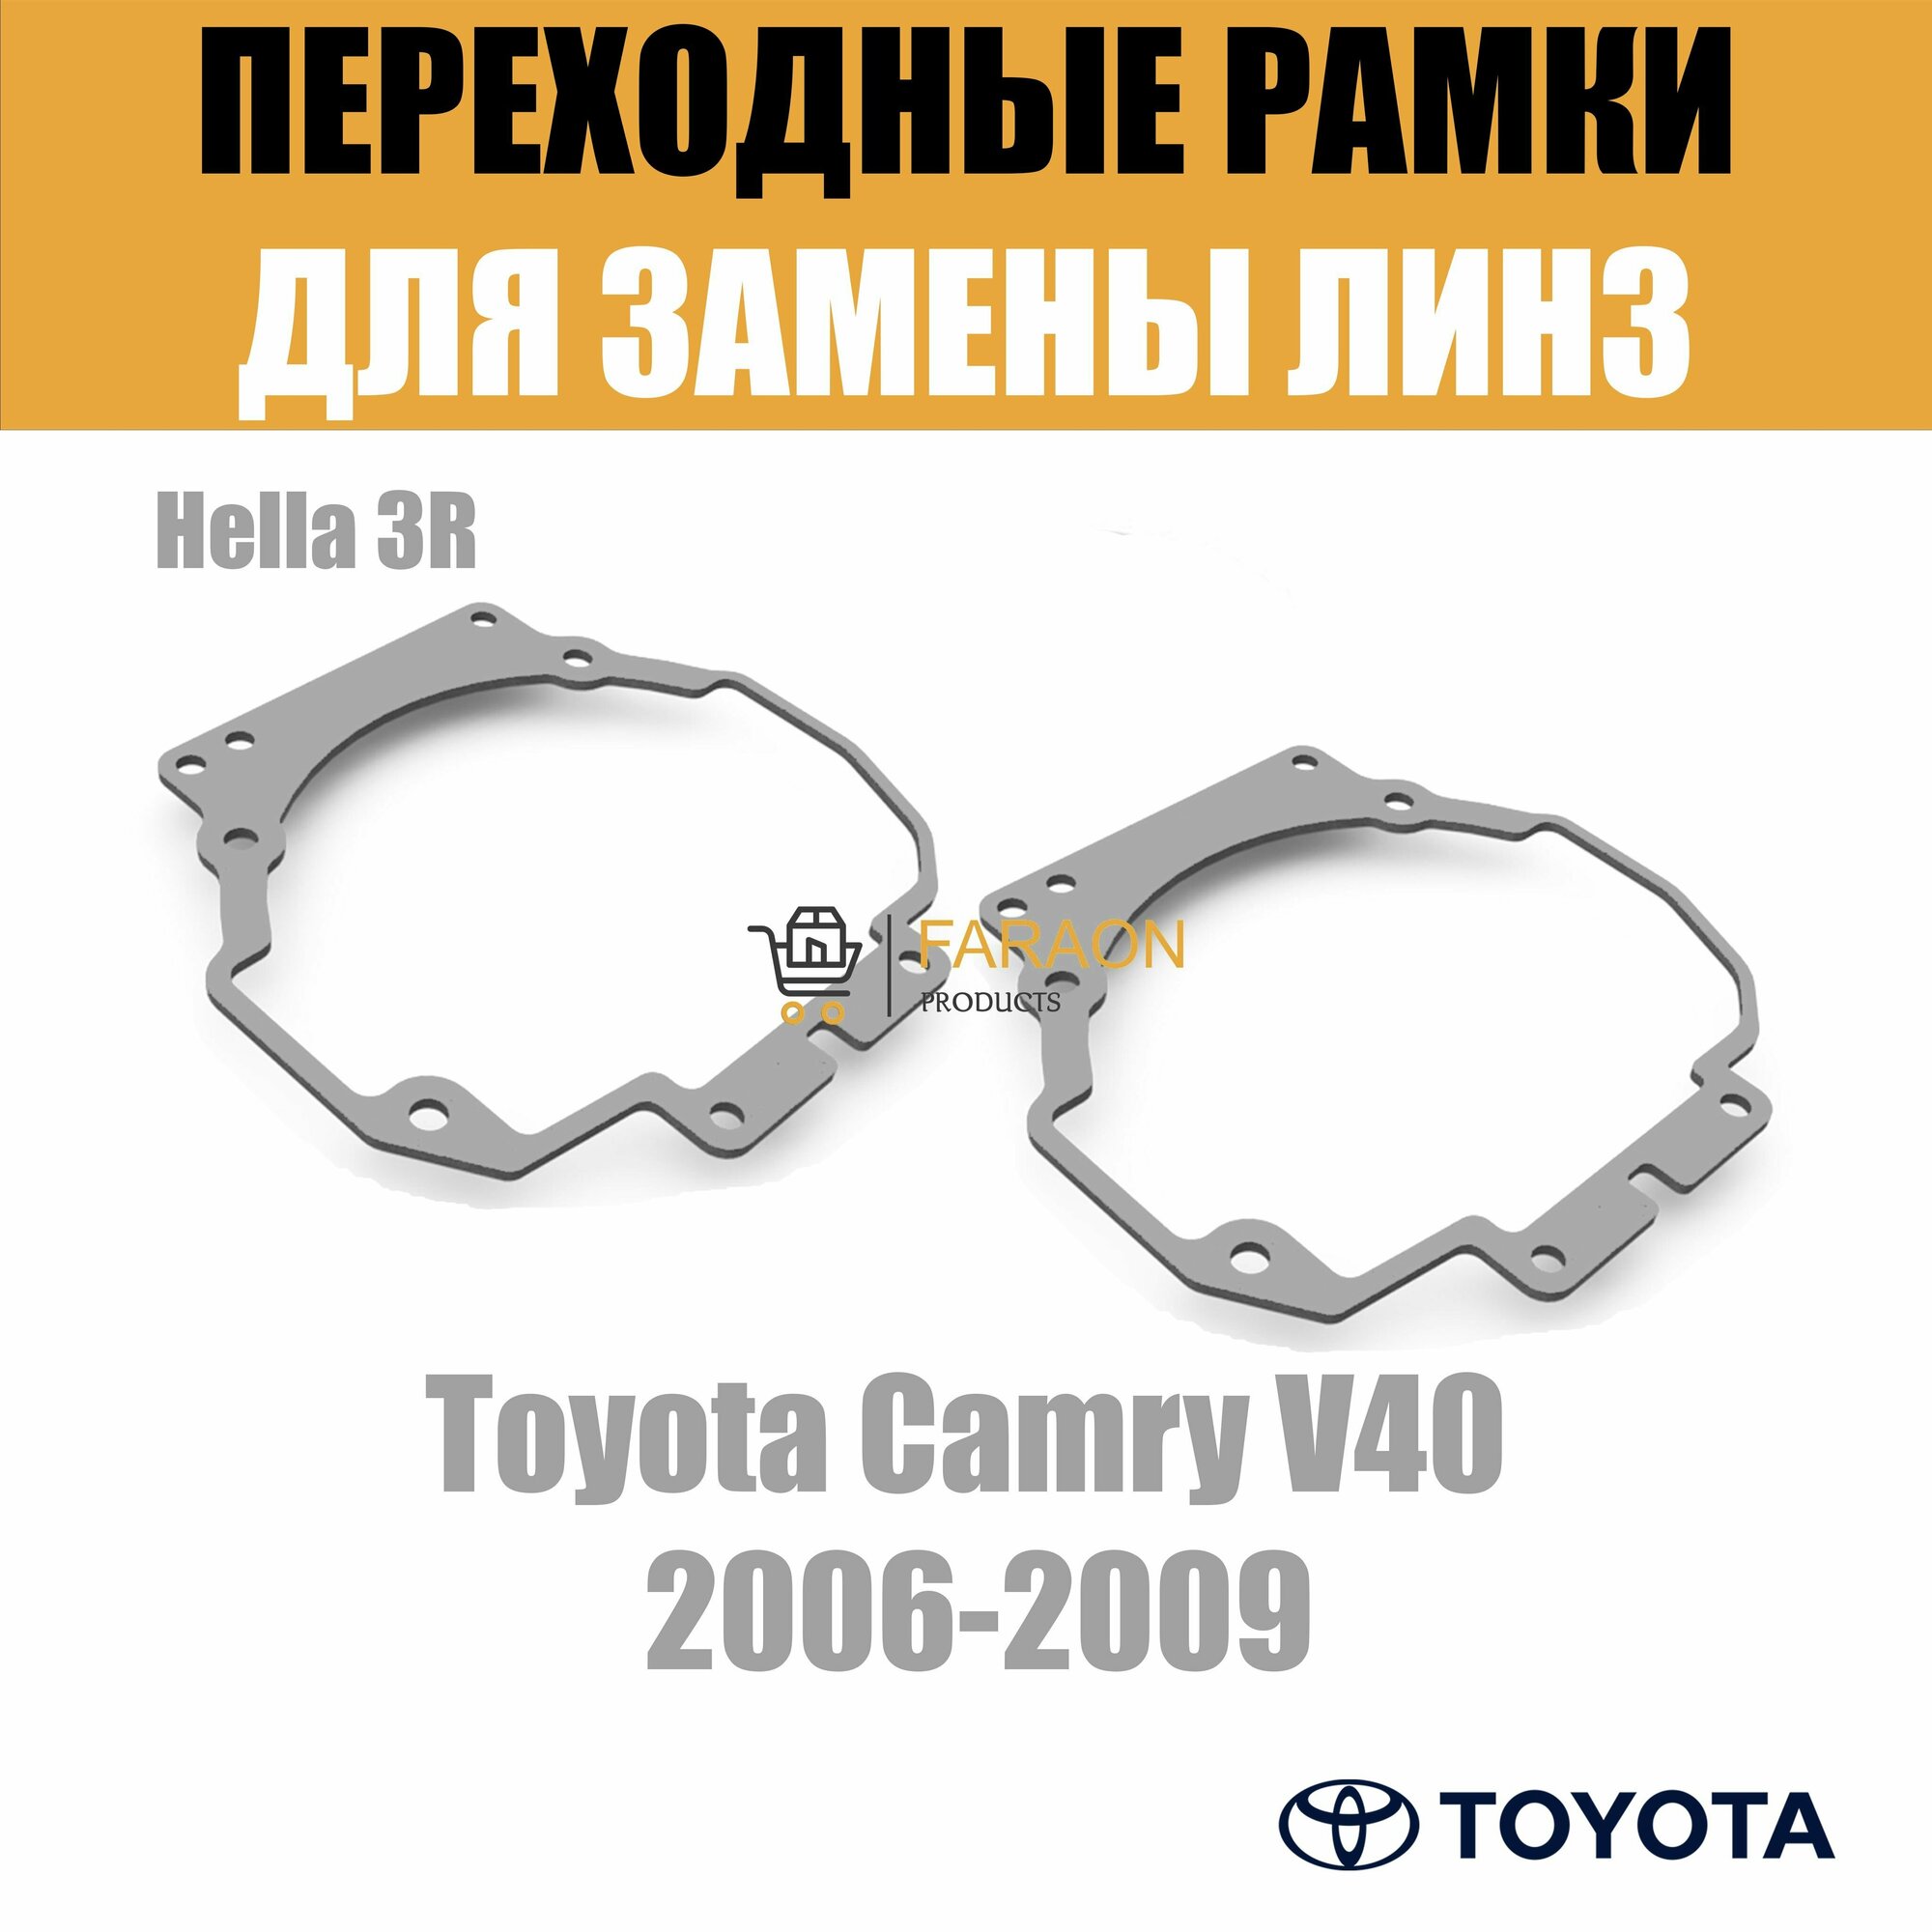 Переходные рамки для замены линз в фарах Toyota Camry 2006-2009 Крепление Hella 3R